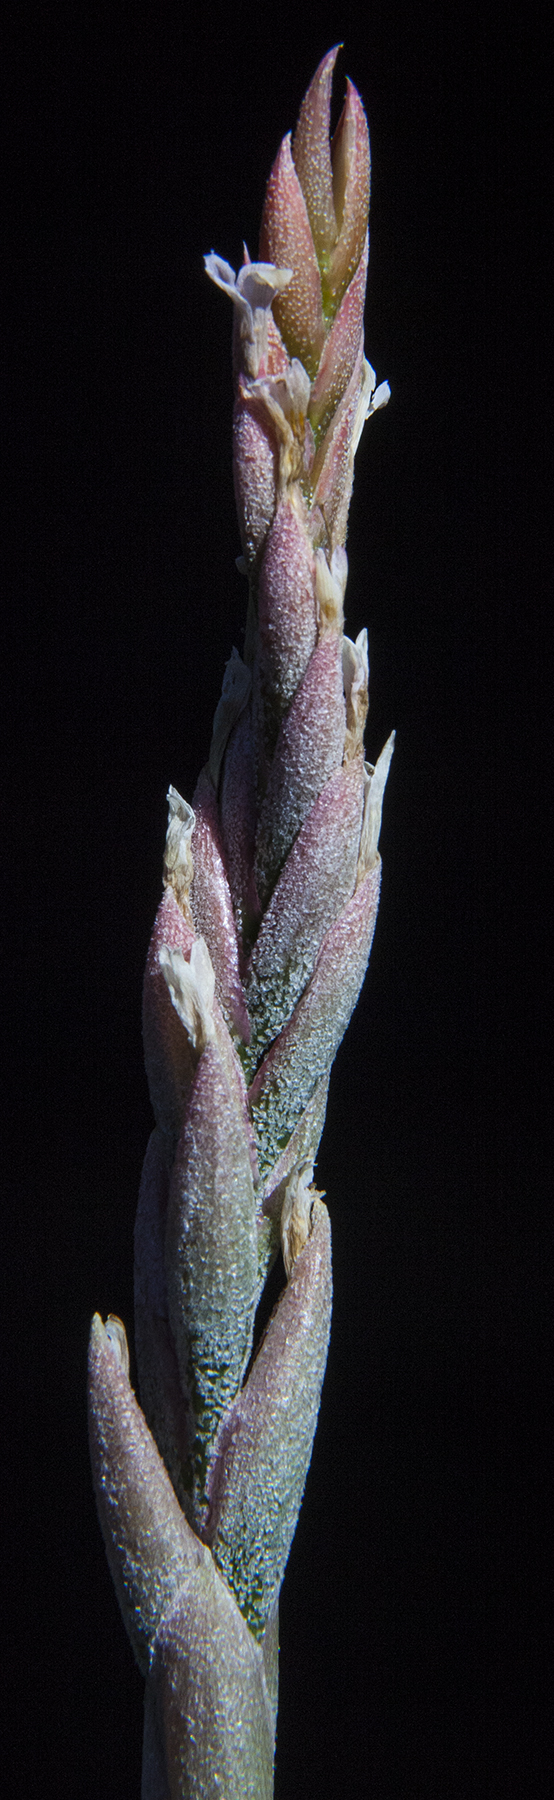 Tillandsia guelzii flower